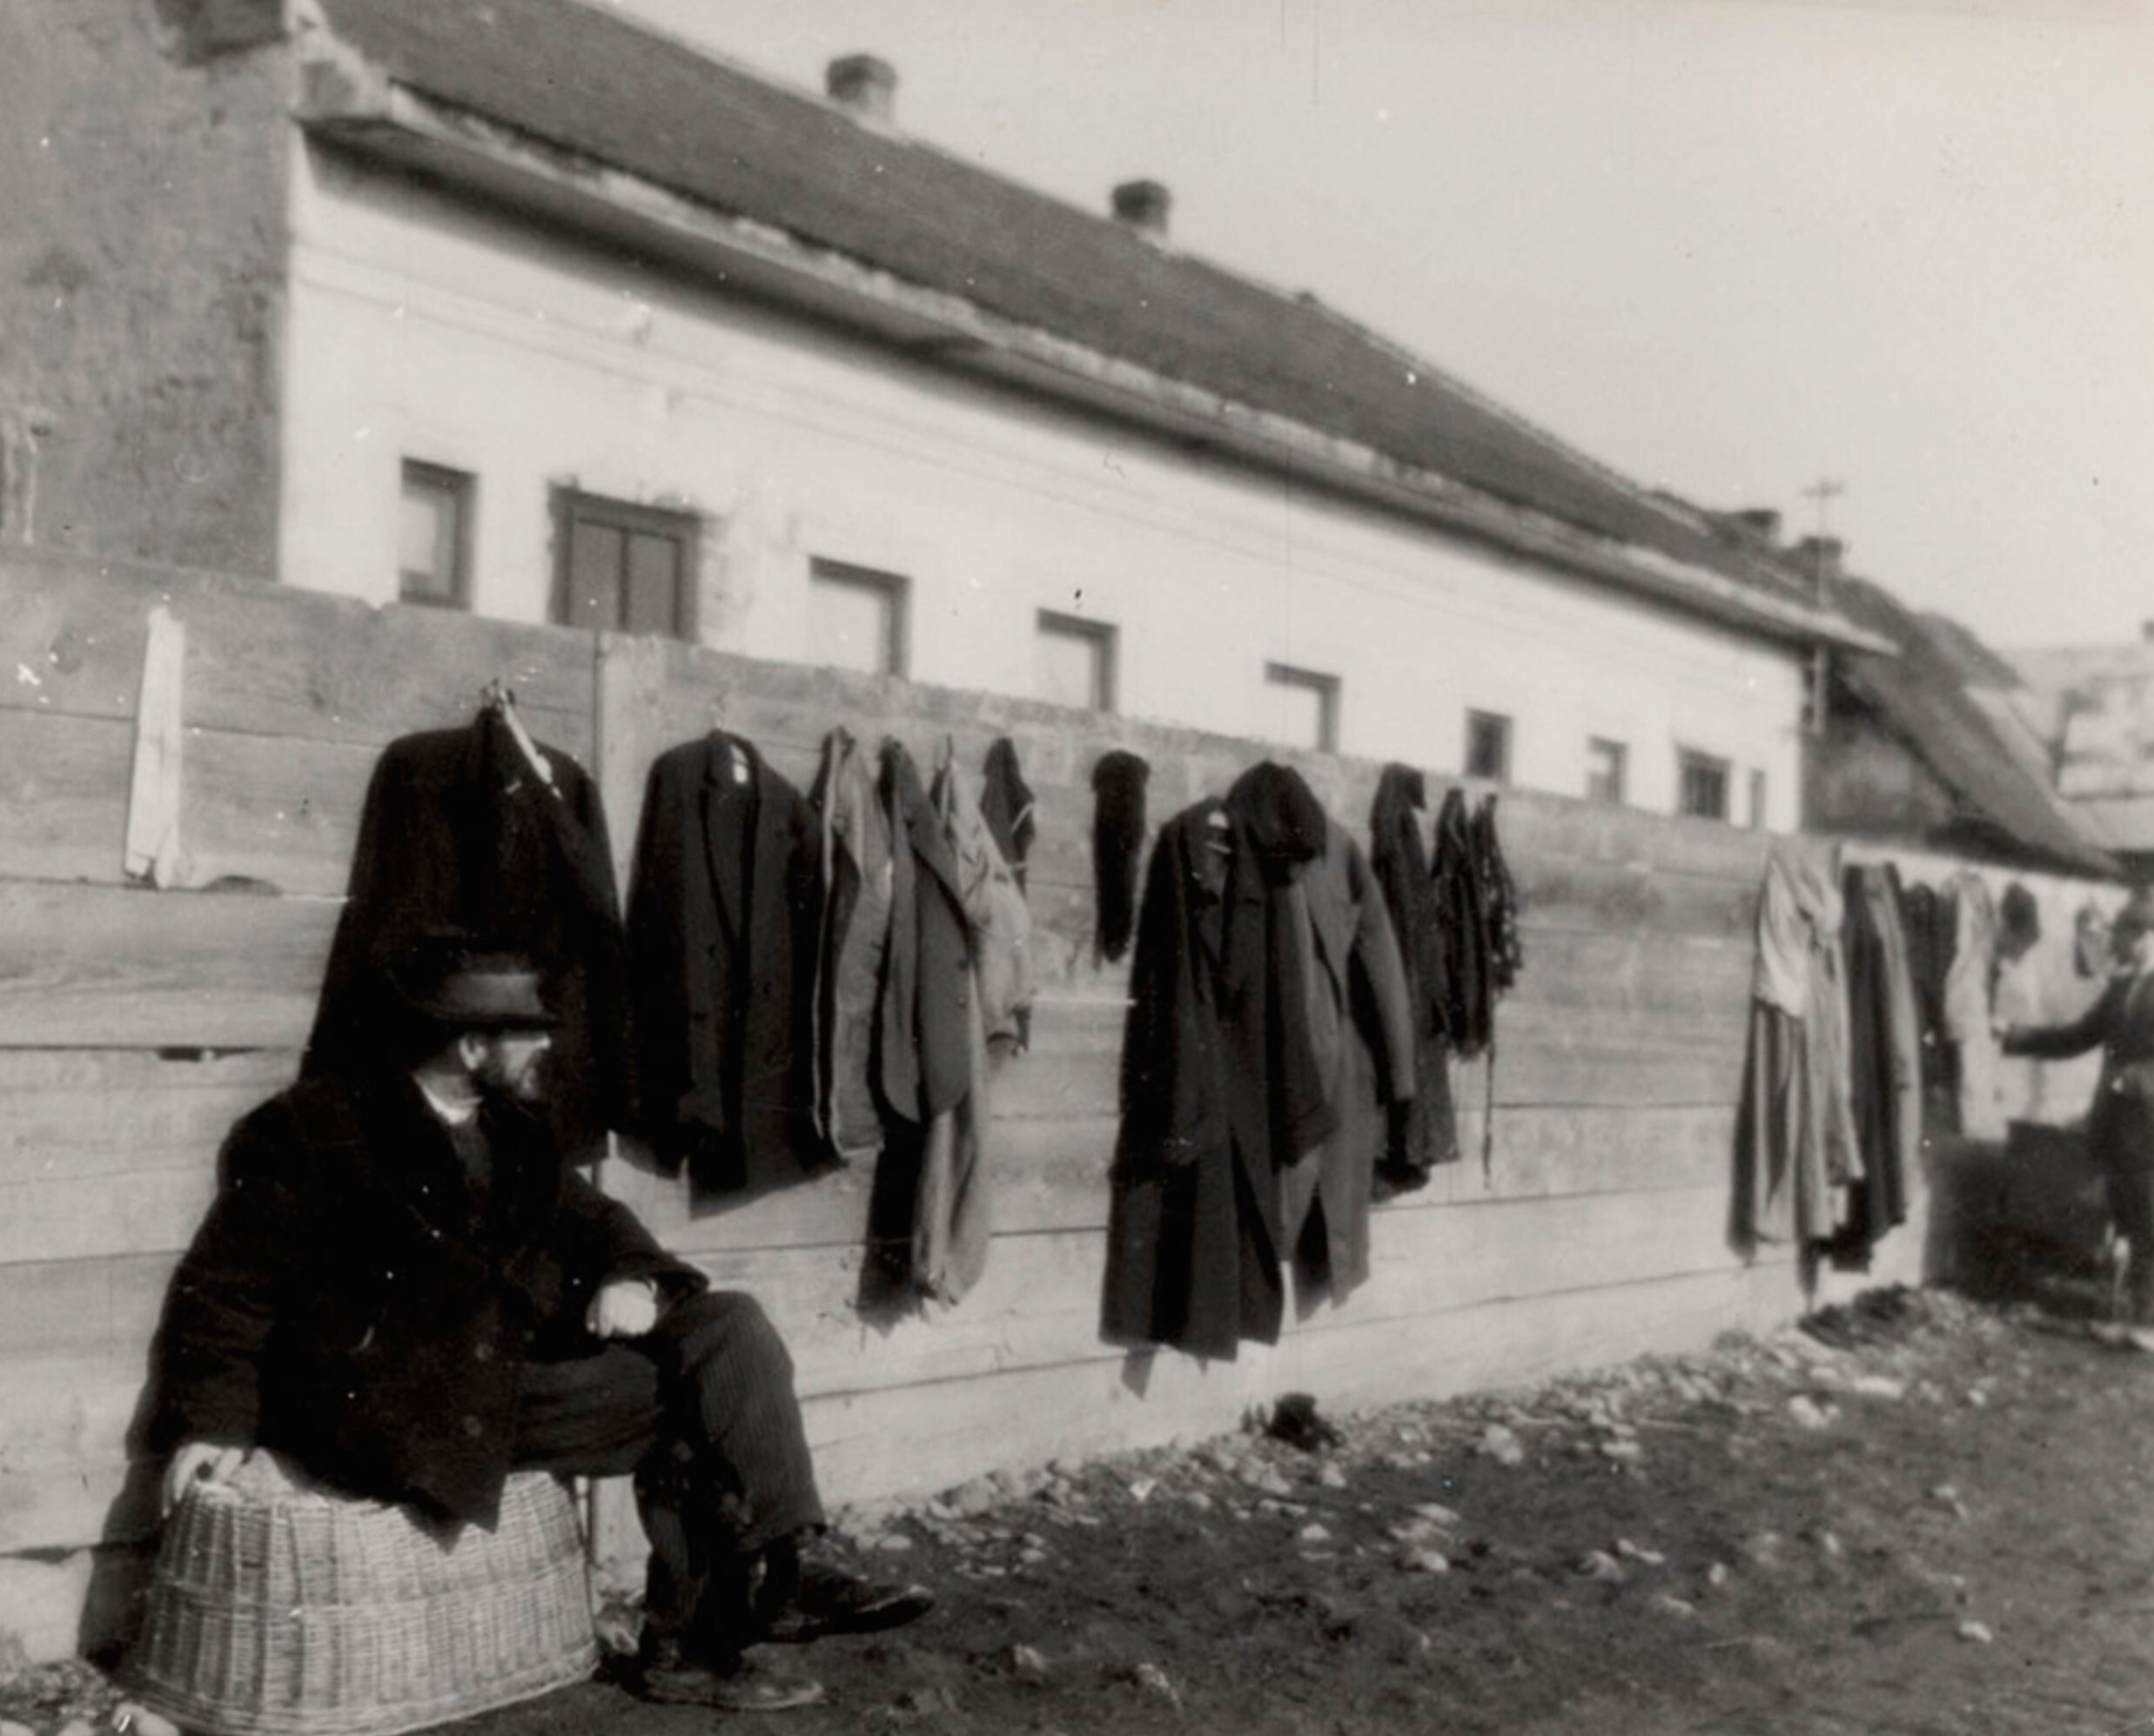 Ждем клиентов, Мукачево, ок. 1935-38 г. Фотограф Роман Вишняк